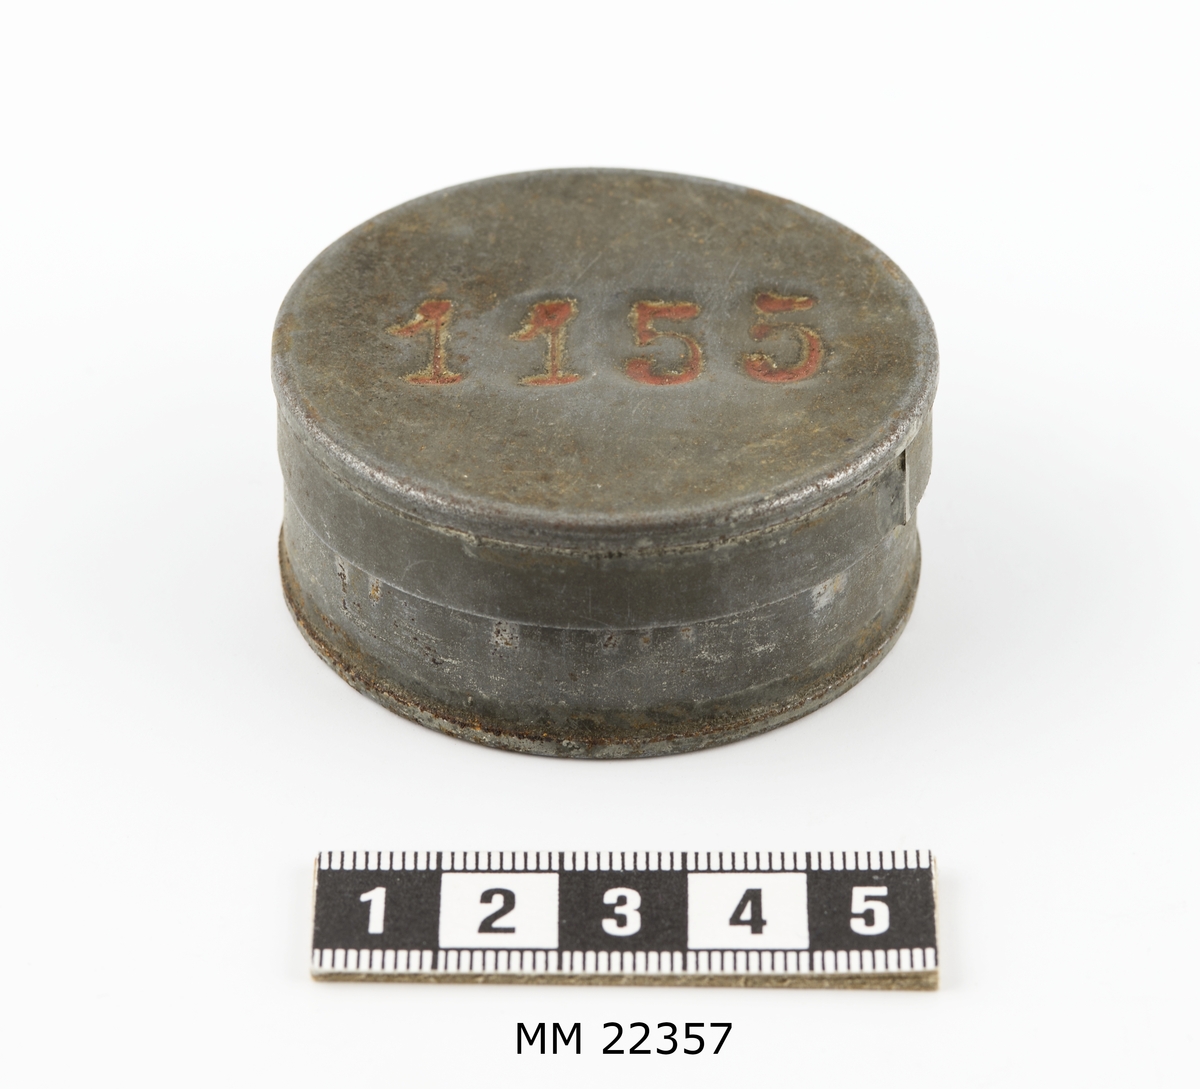 Avlöningsask av bleckplåt, rund med lock.
Märkt på locket: "1155".
Jämför K 9512.